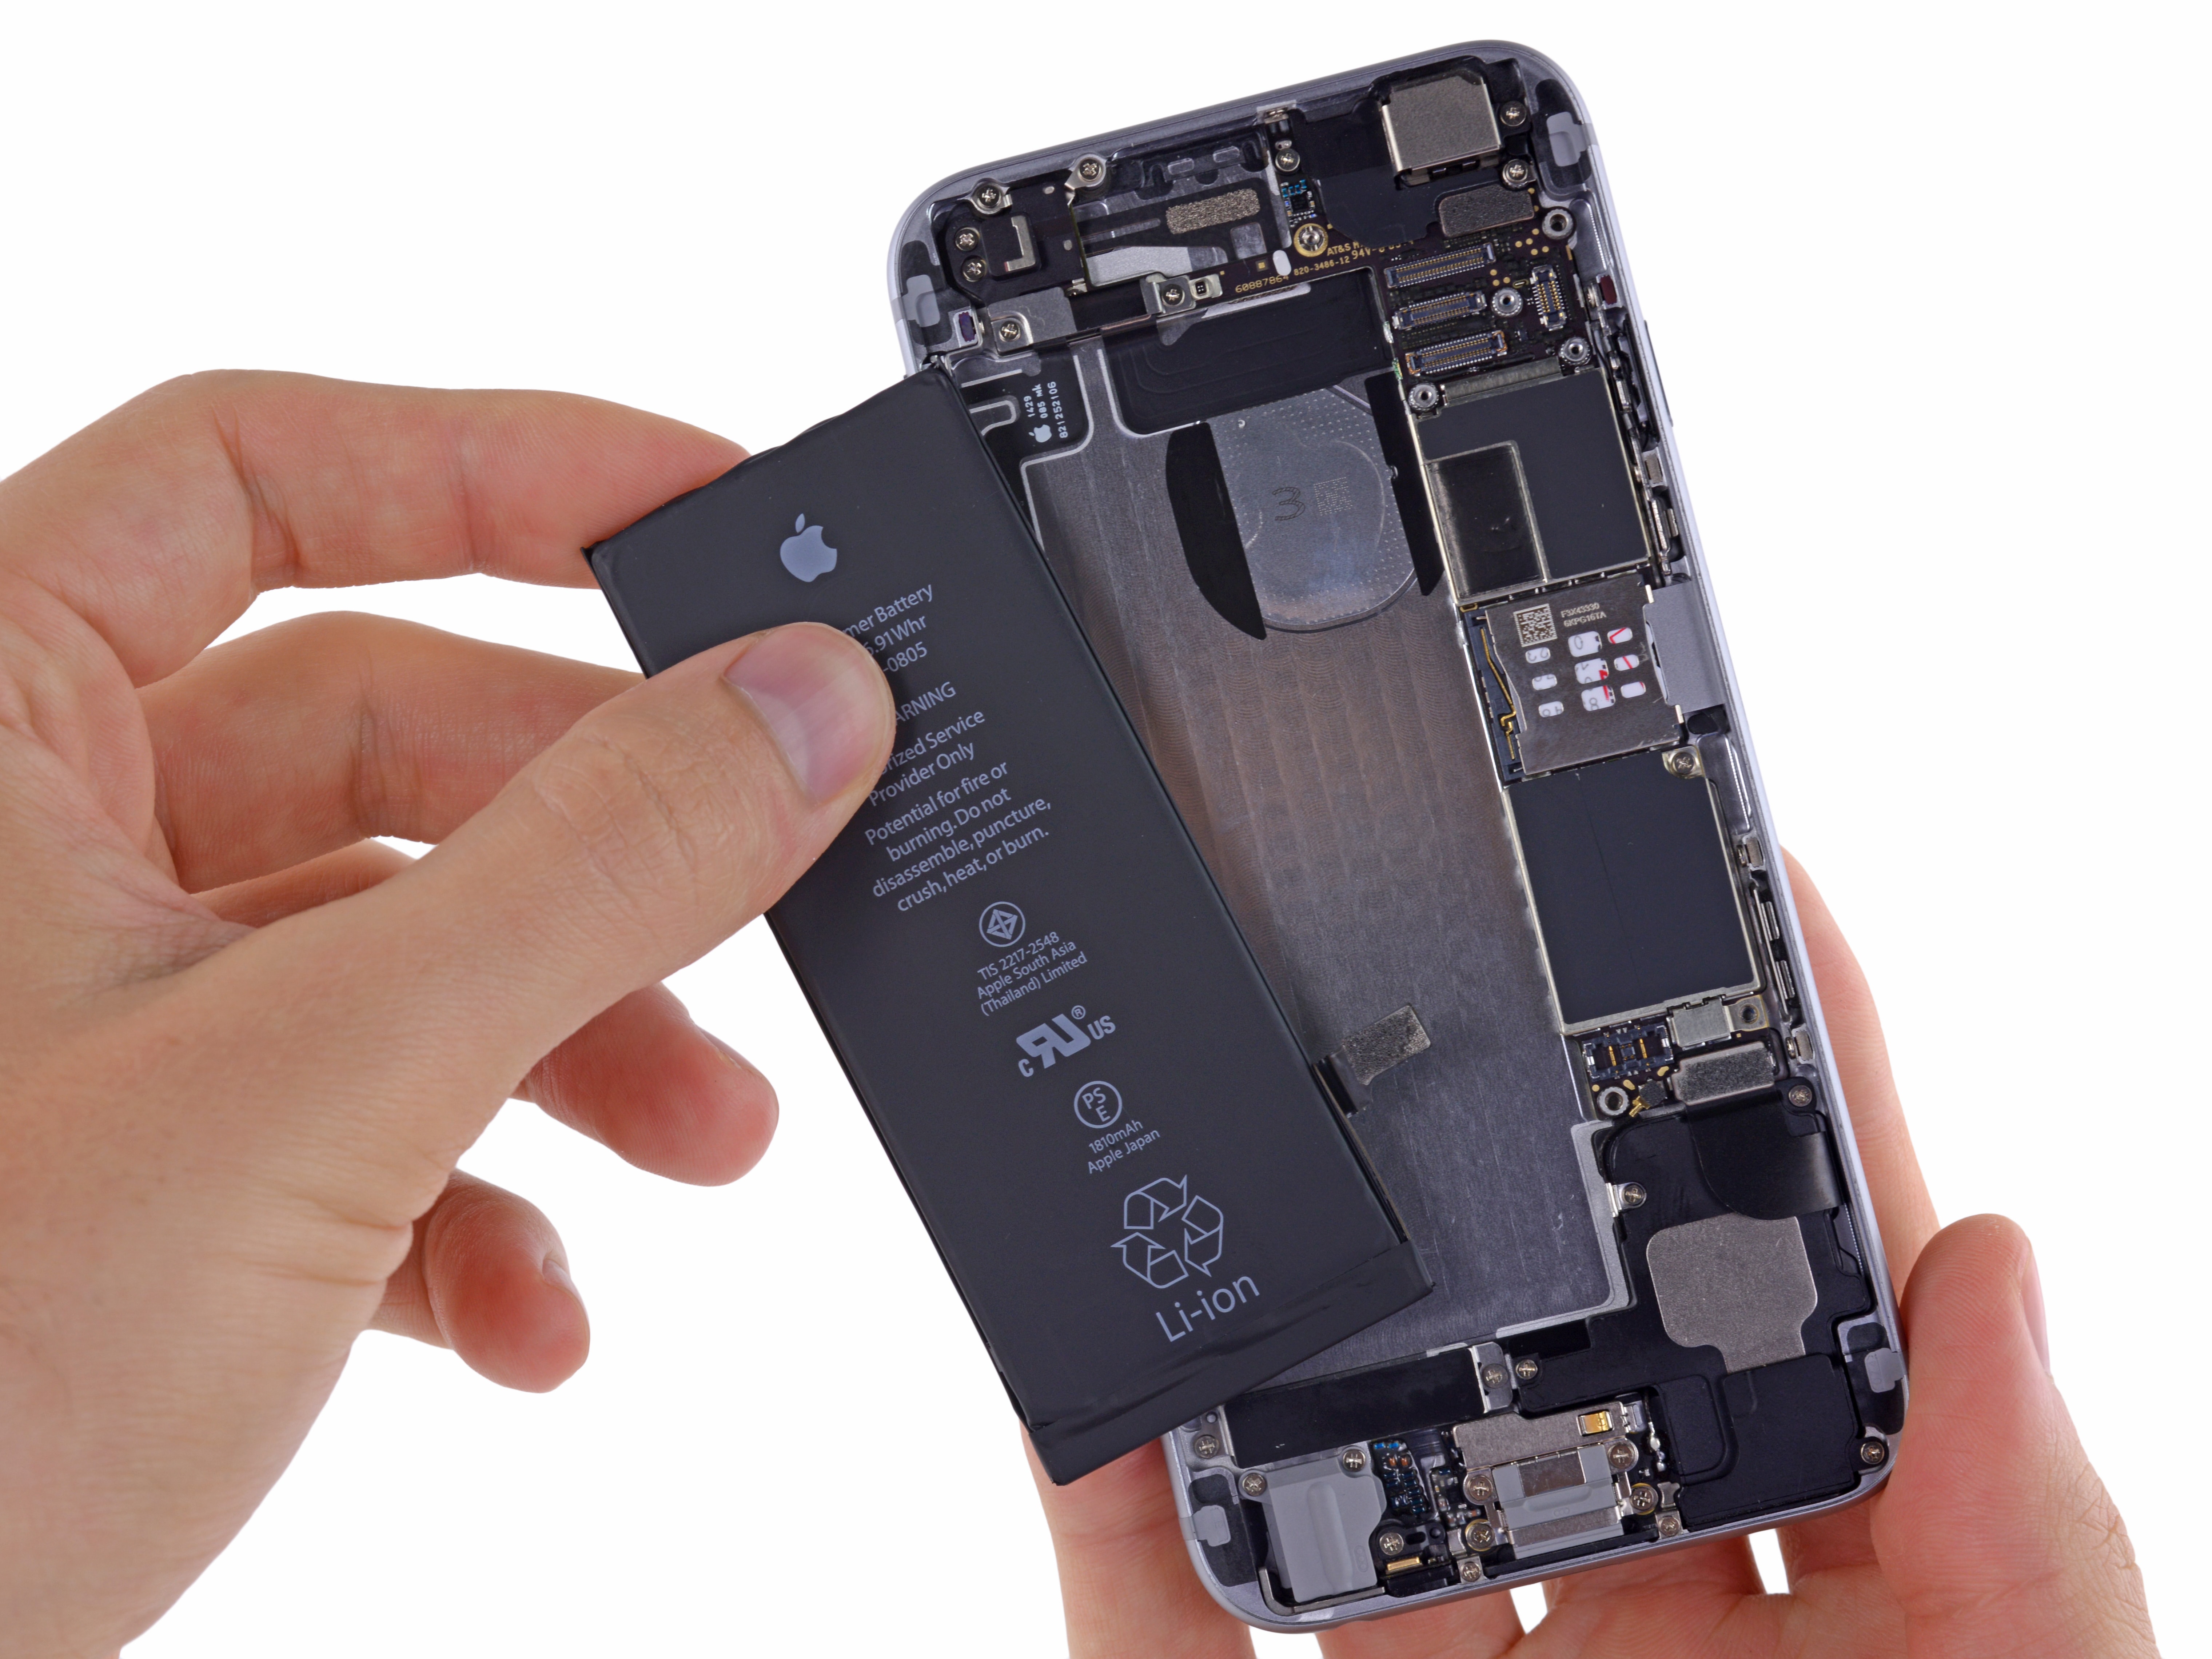 得過且過－用戶事後發現 Apple 根本沒有為他更換 iPhone 電池